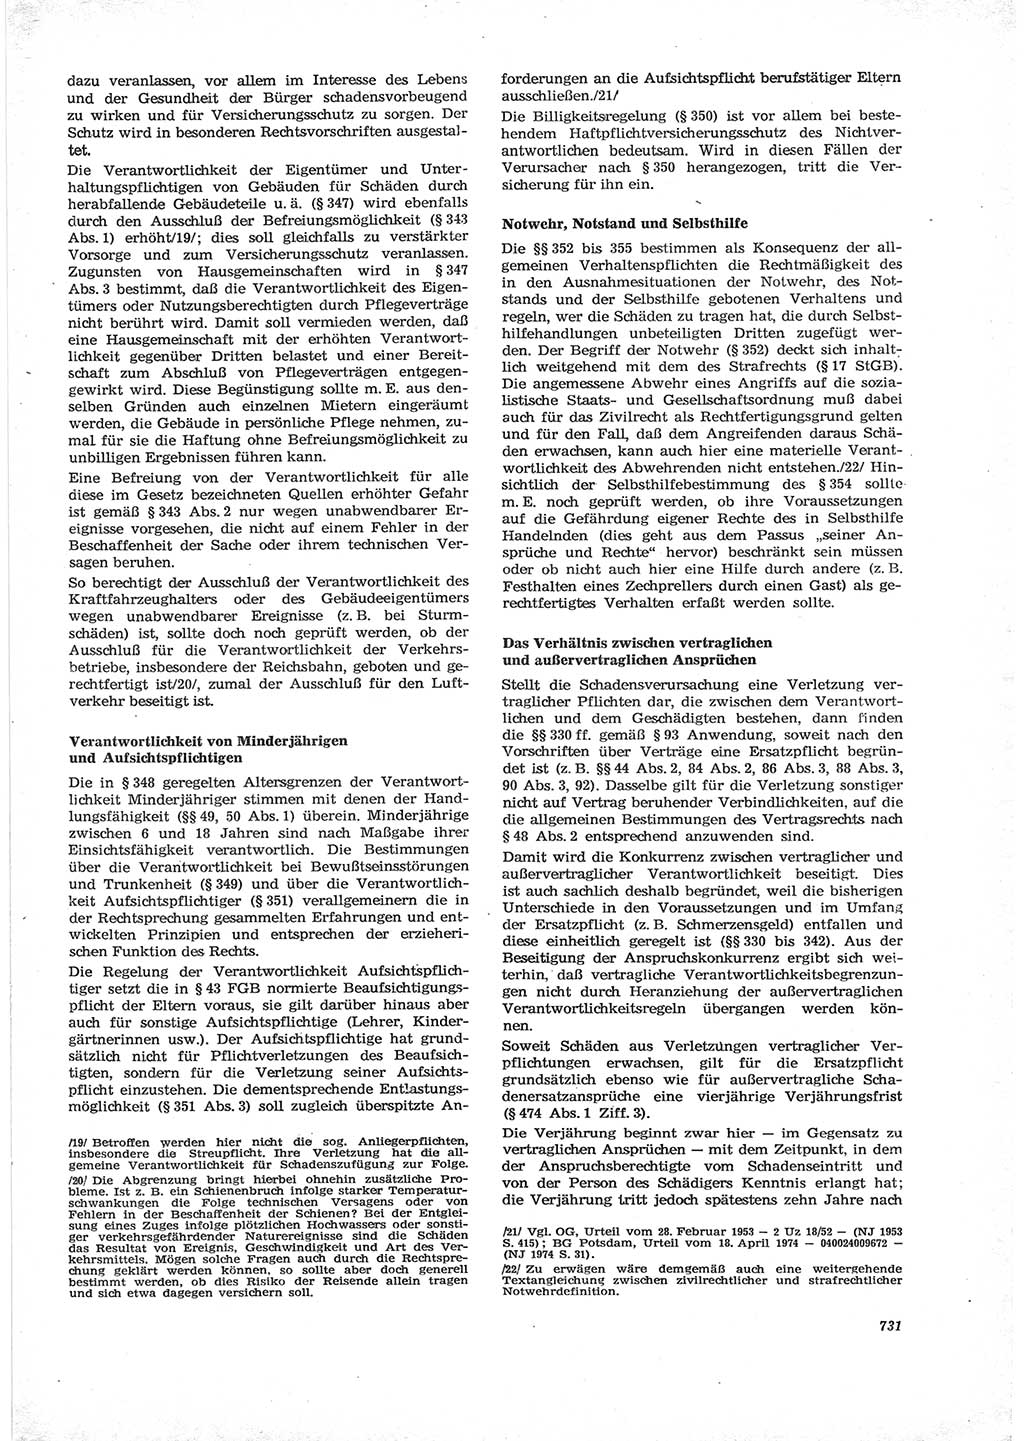 Neue Justiz (NJ), Zeitschrift für Recht und Rechtswissenschaft [Deutsche Demokratische Republik (DDR)], 28. Jahrgang 1974, Seite 731 (NJ DDR 1974, S. 731)